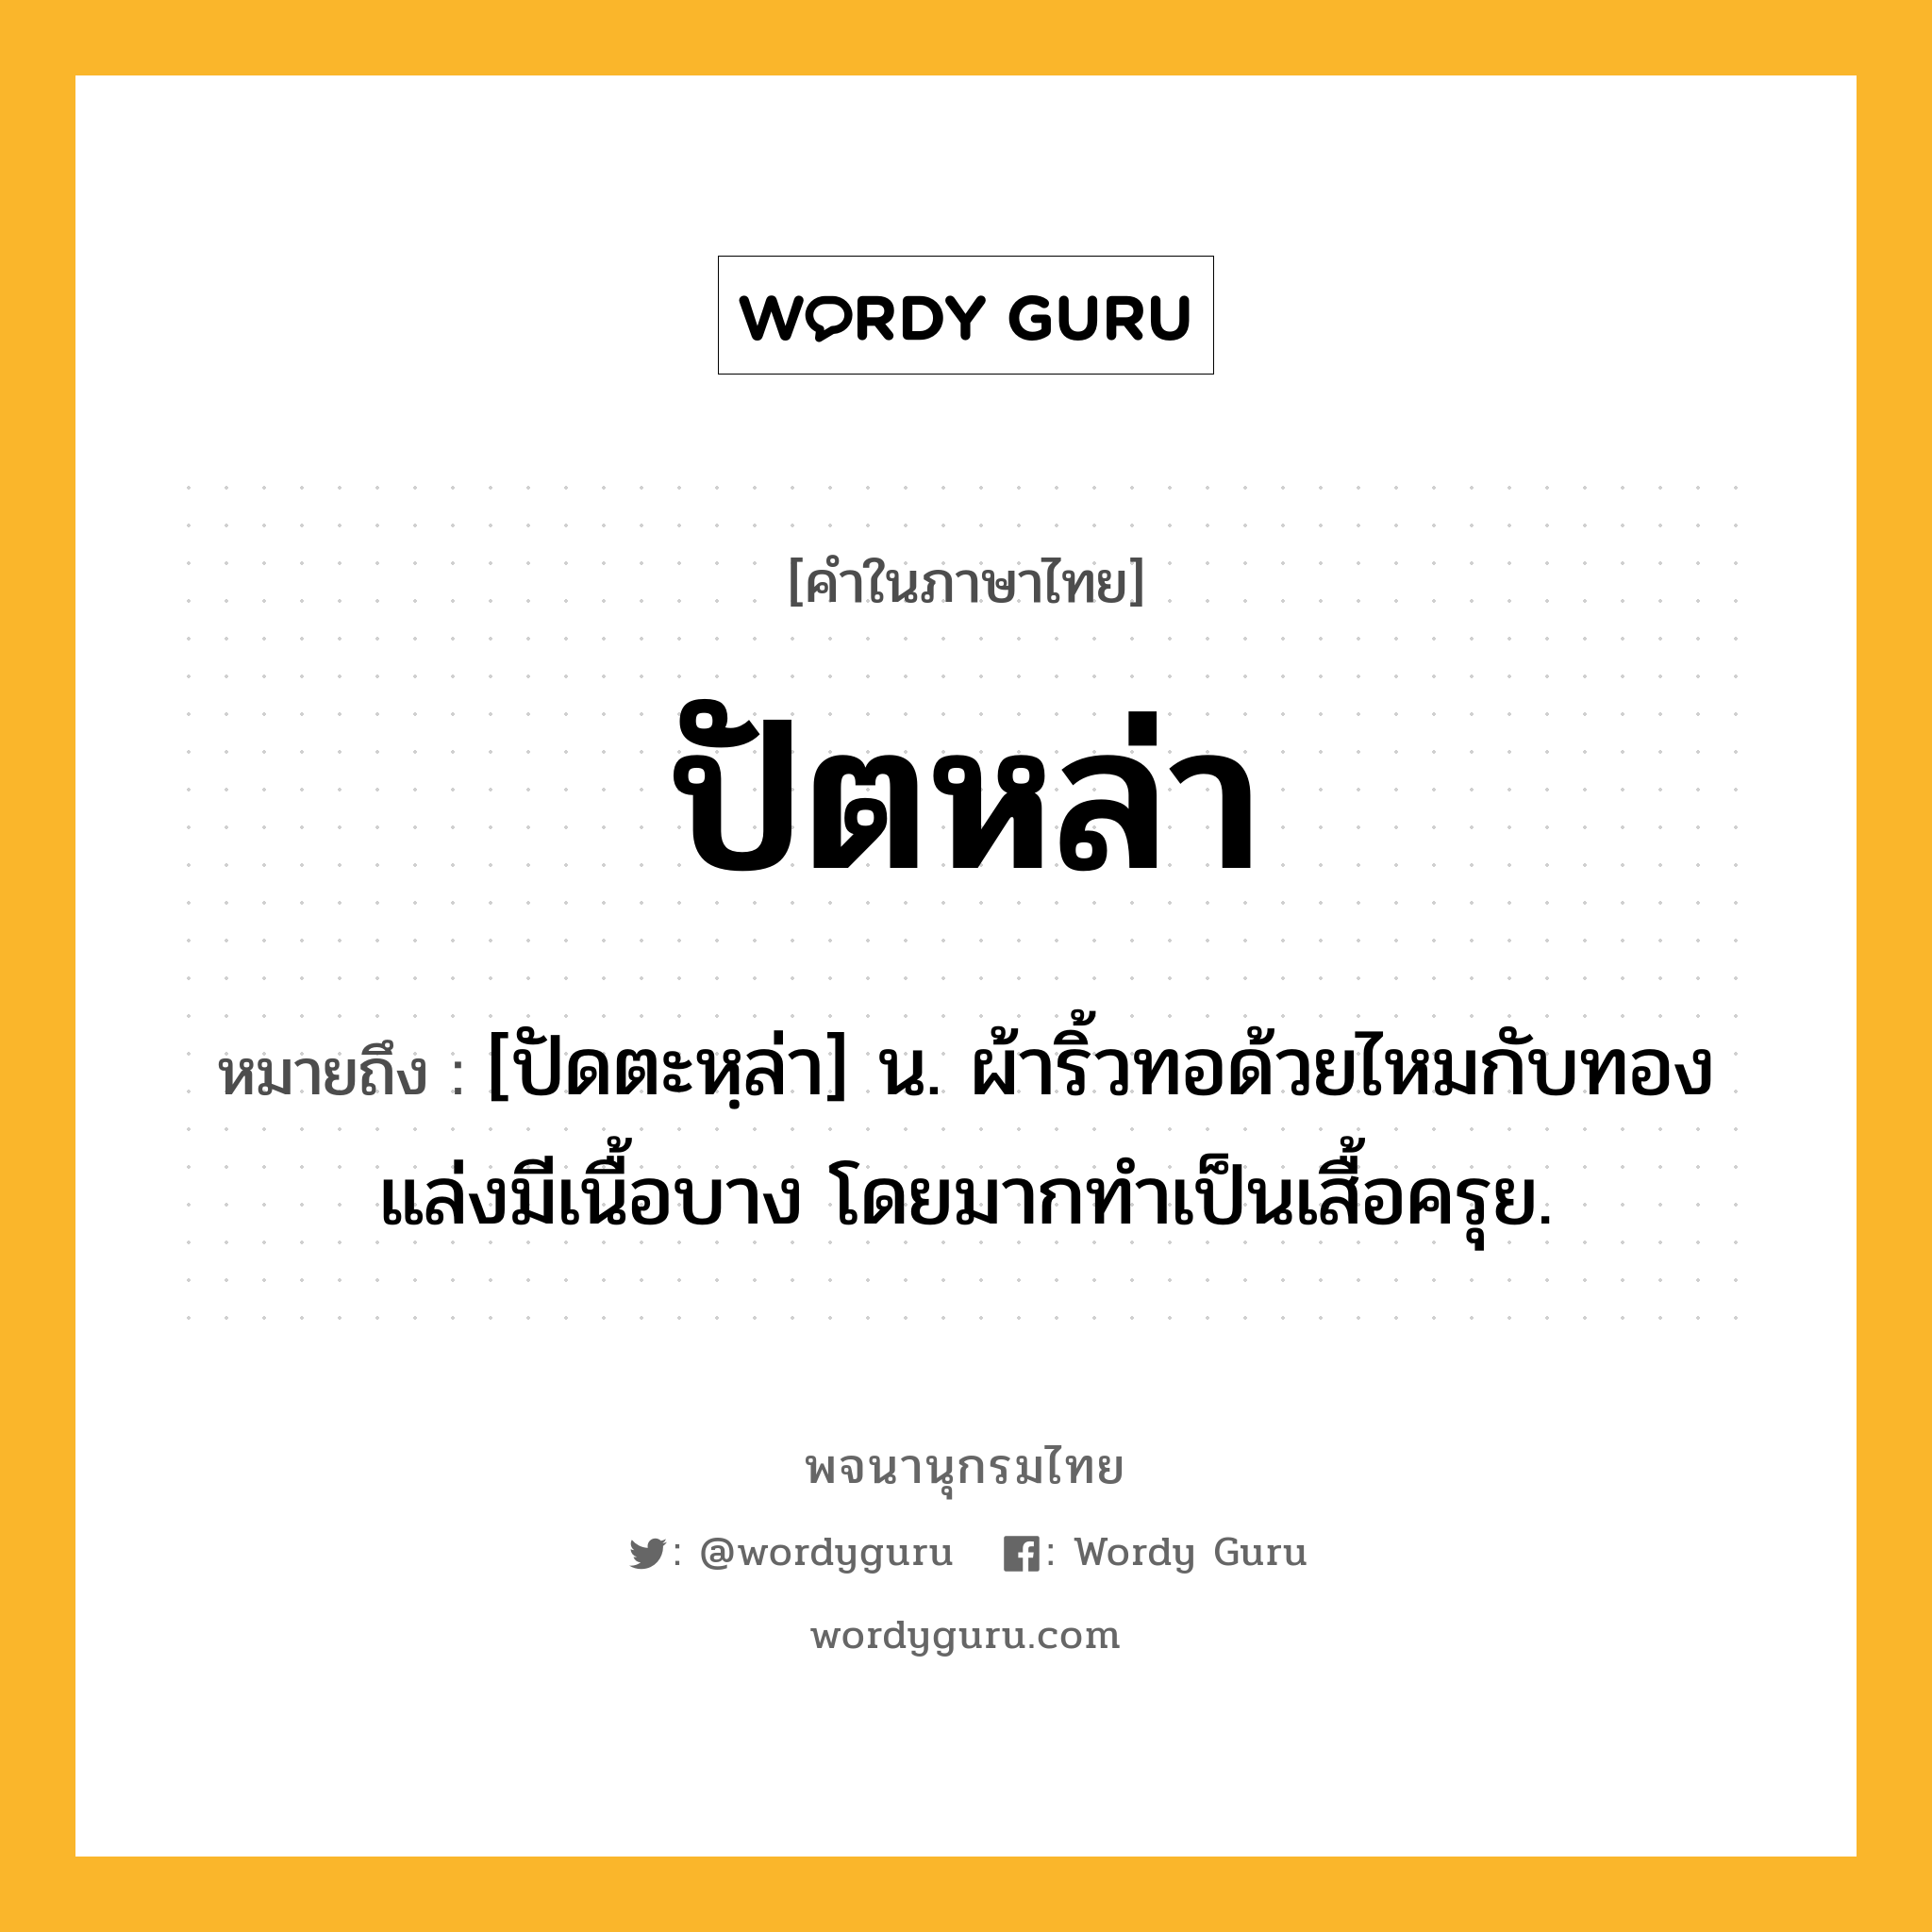 ปัตหล่า หมายถึงอะไร?, คำในภาษาไทย ปัตหล่า หมายถึง [ปัดตะหฺล่า] น. ผ้าริ้วทอด้วยไหมกับทองแล่งมีเนื้อบาง โดยมากทําเป็นเสื้อครุย.